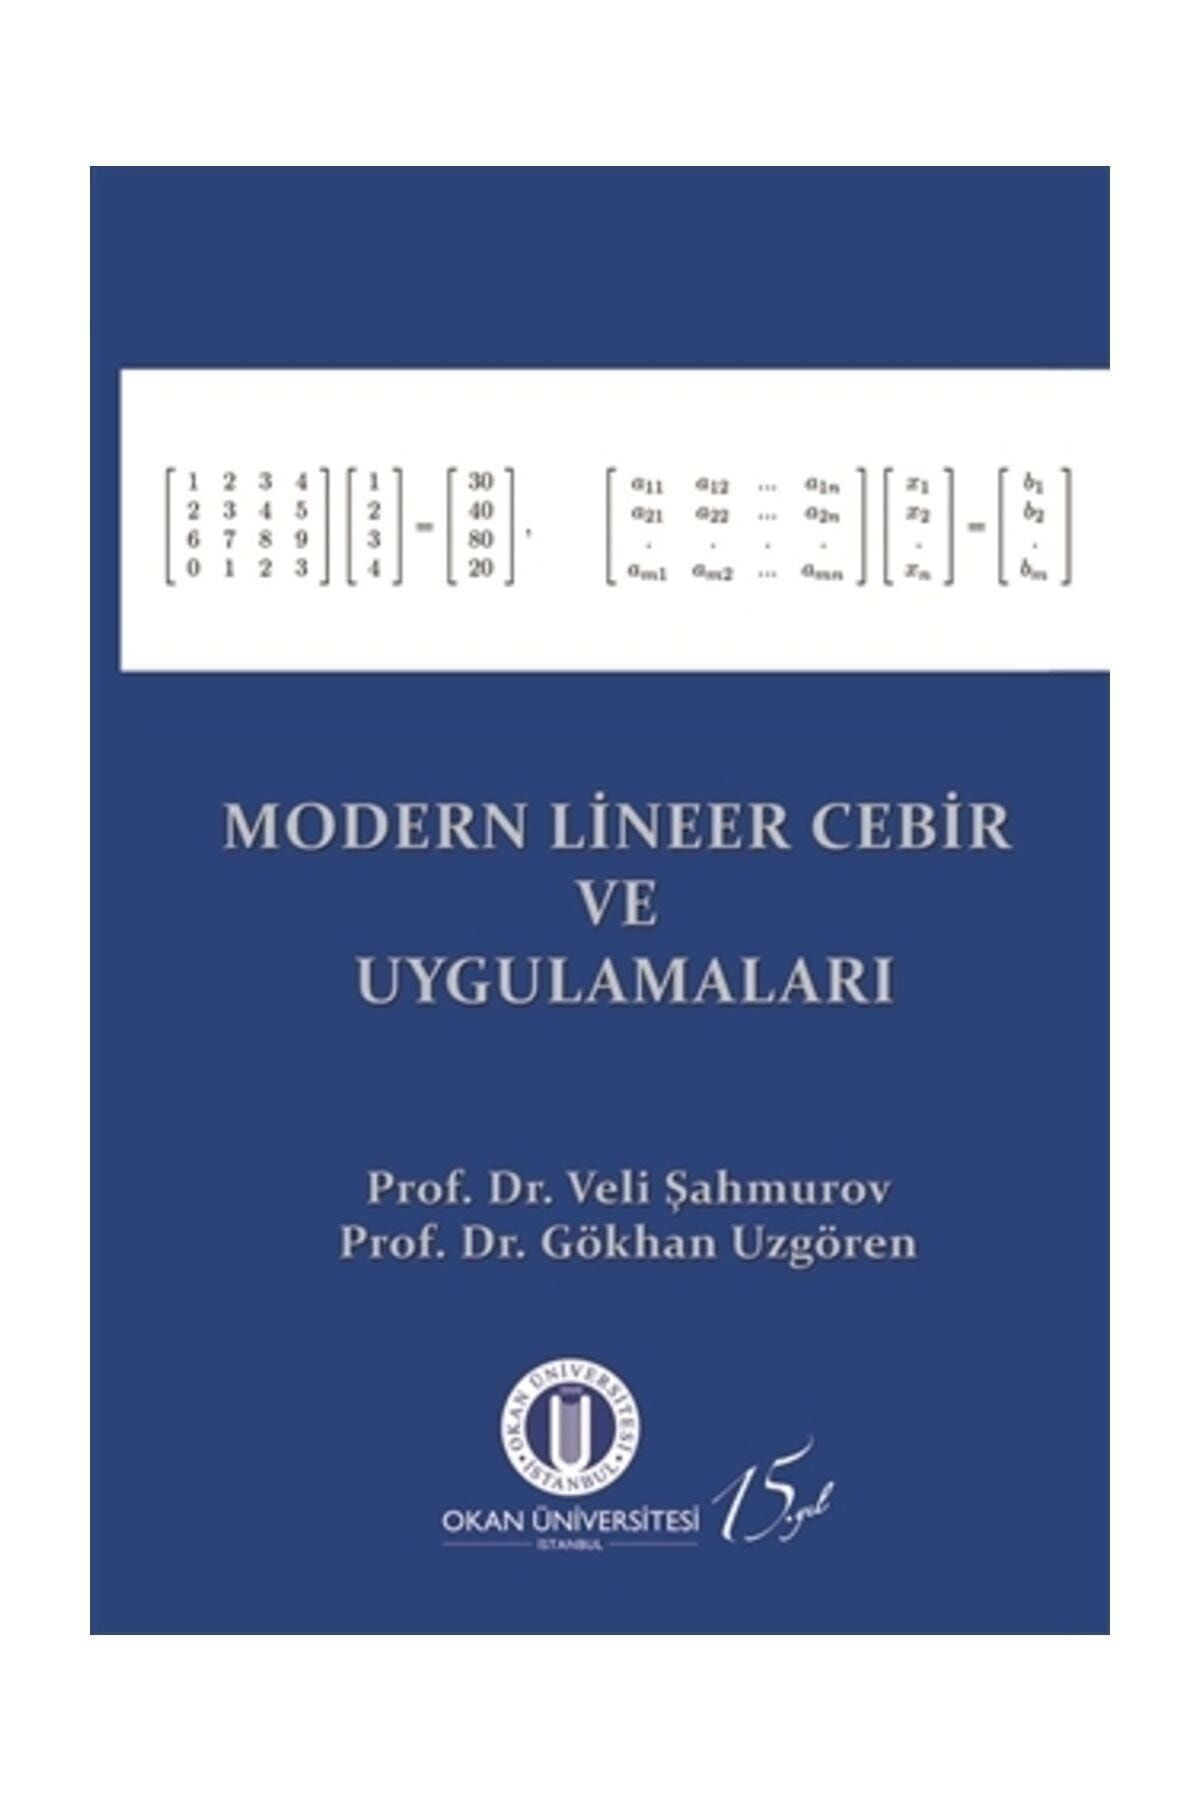 Okan Üniversitesi Kitapları Modern Lineer Cebir ve Uygulamaları